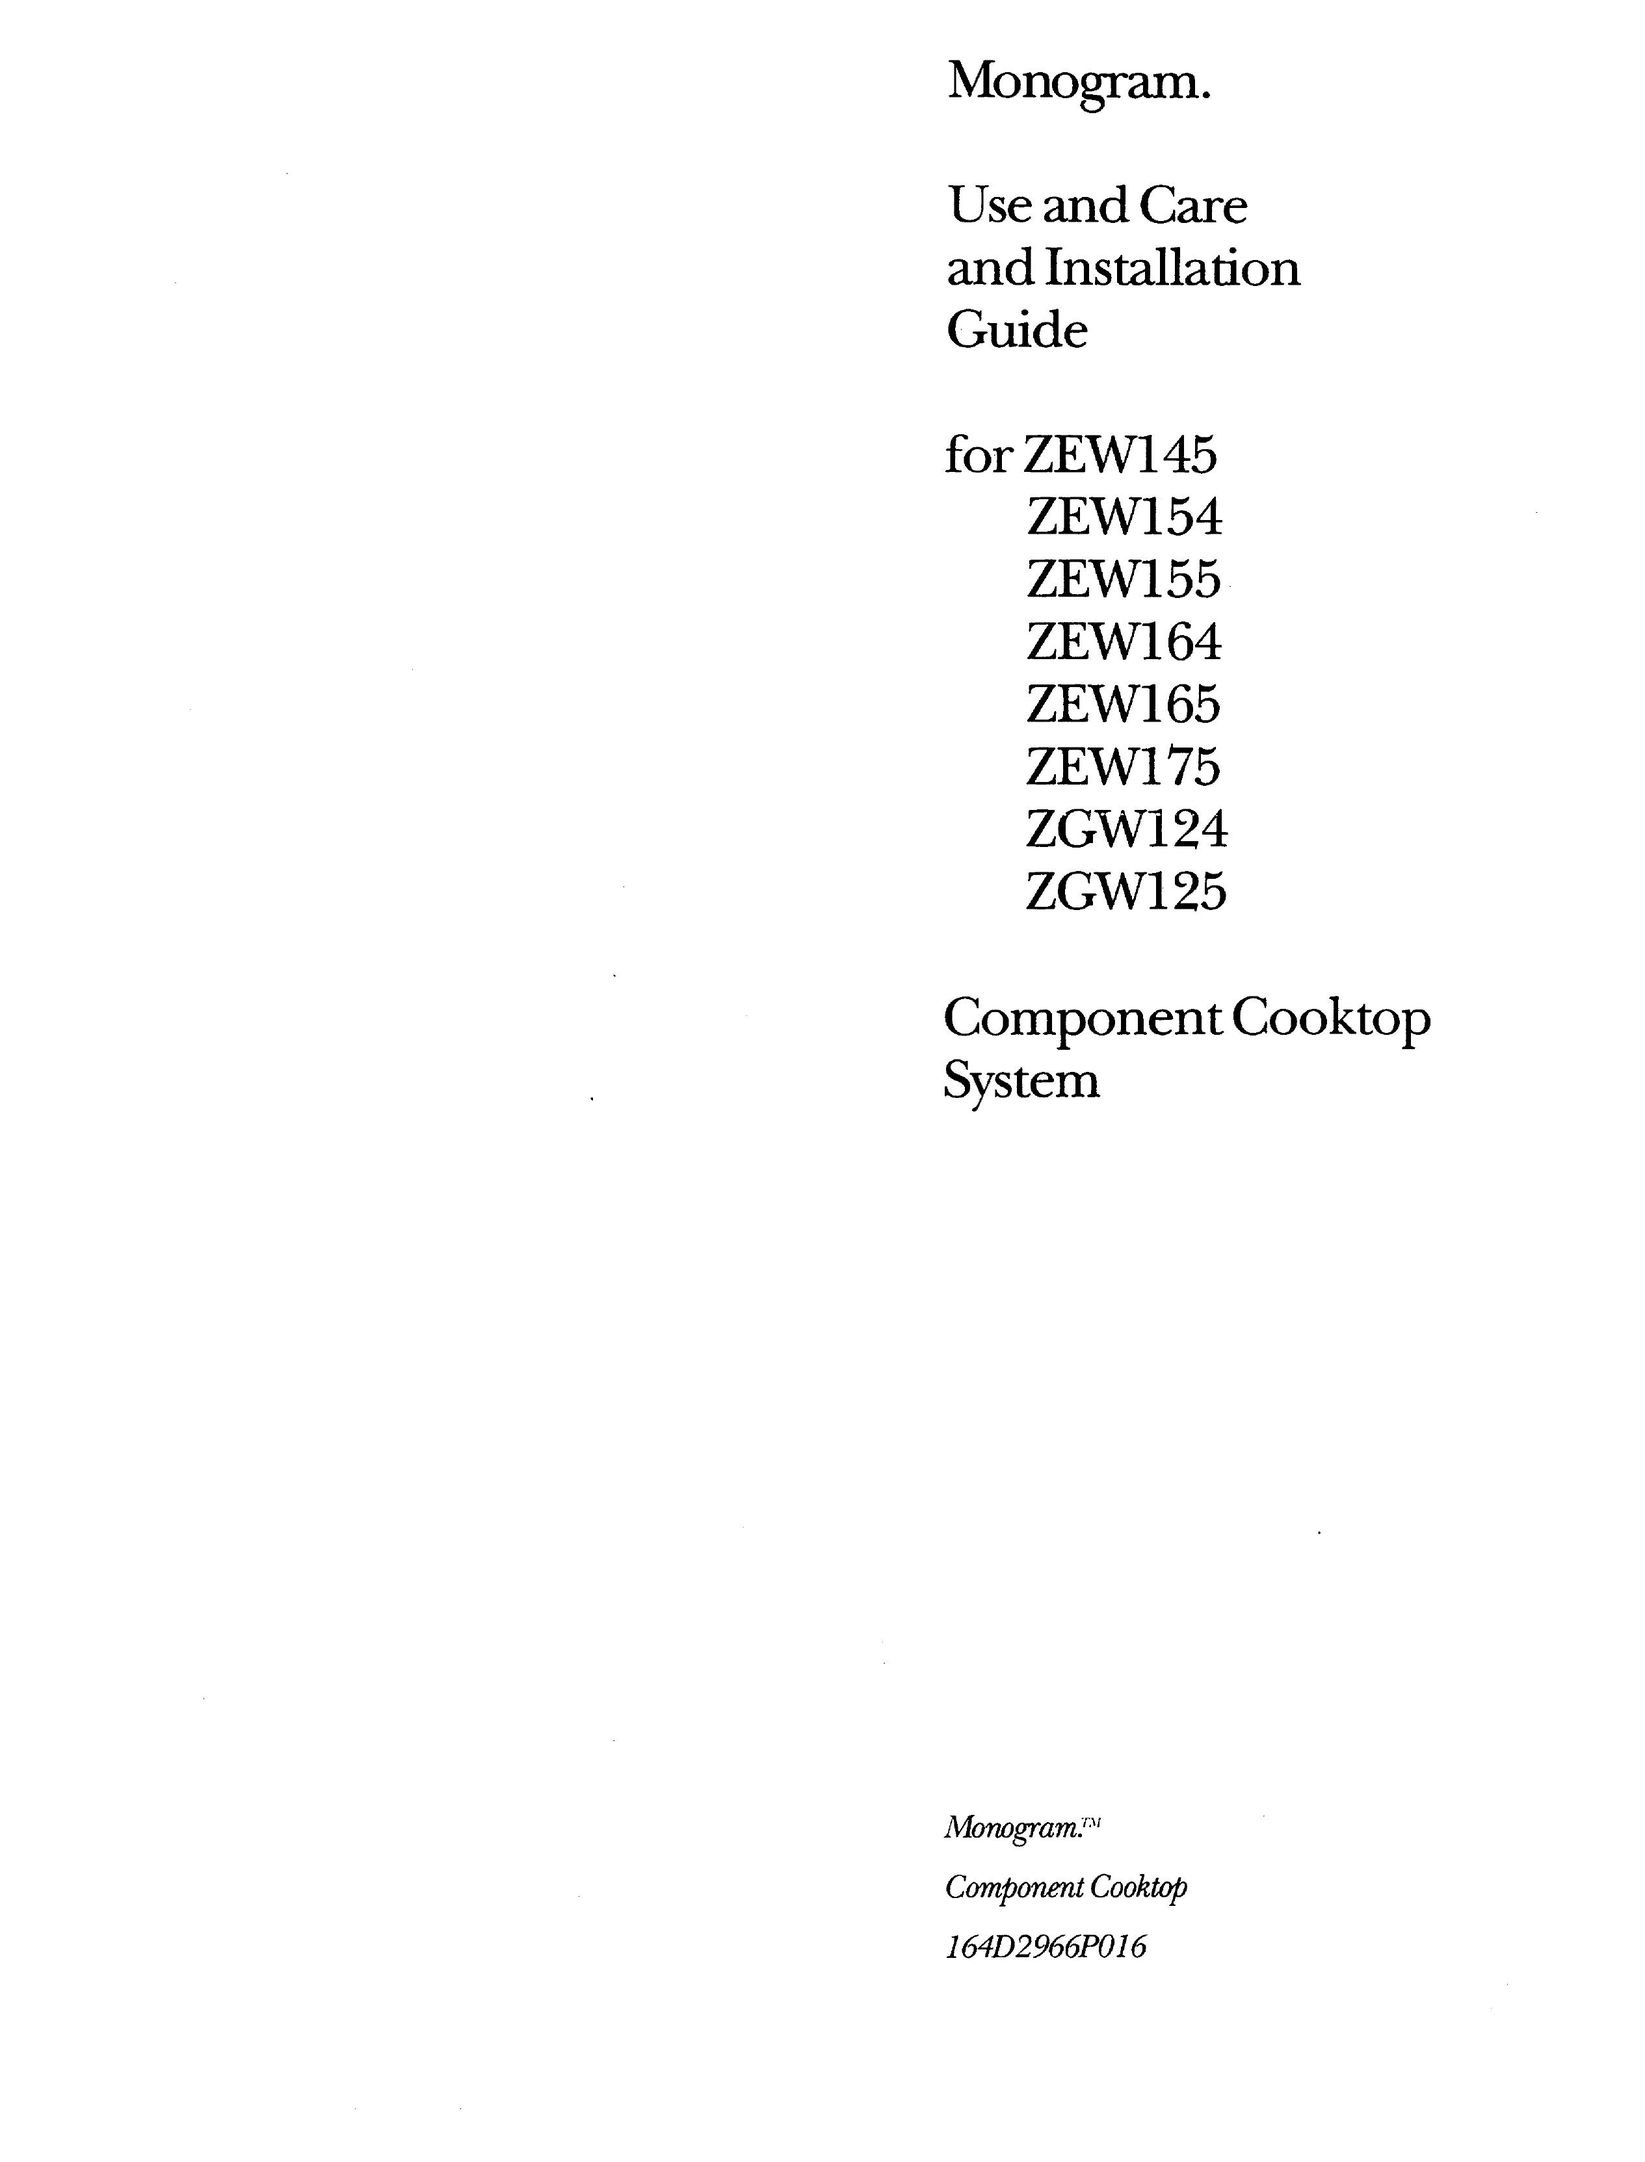 GE Monogram ZEW165 Cooktop User Manual